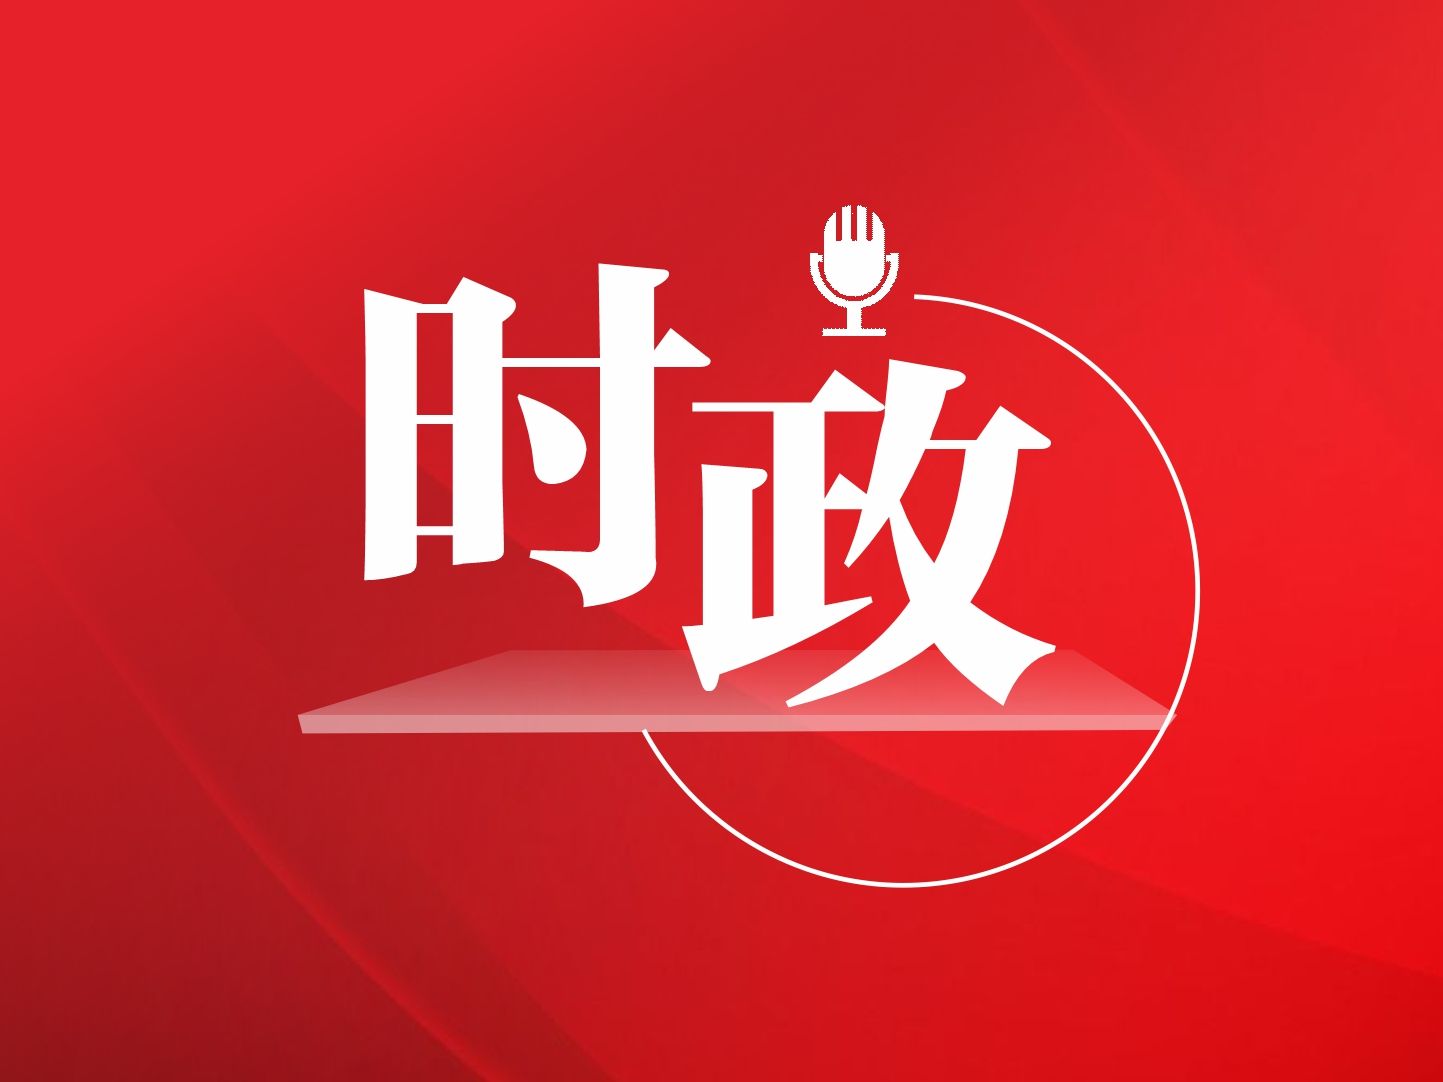 全国抗击新冠肺炎疫情表彰大会将于9月8日上午在京举行 